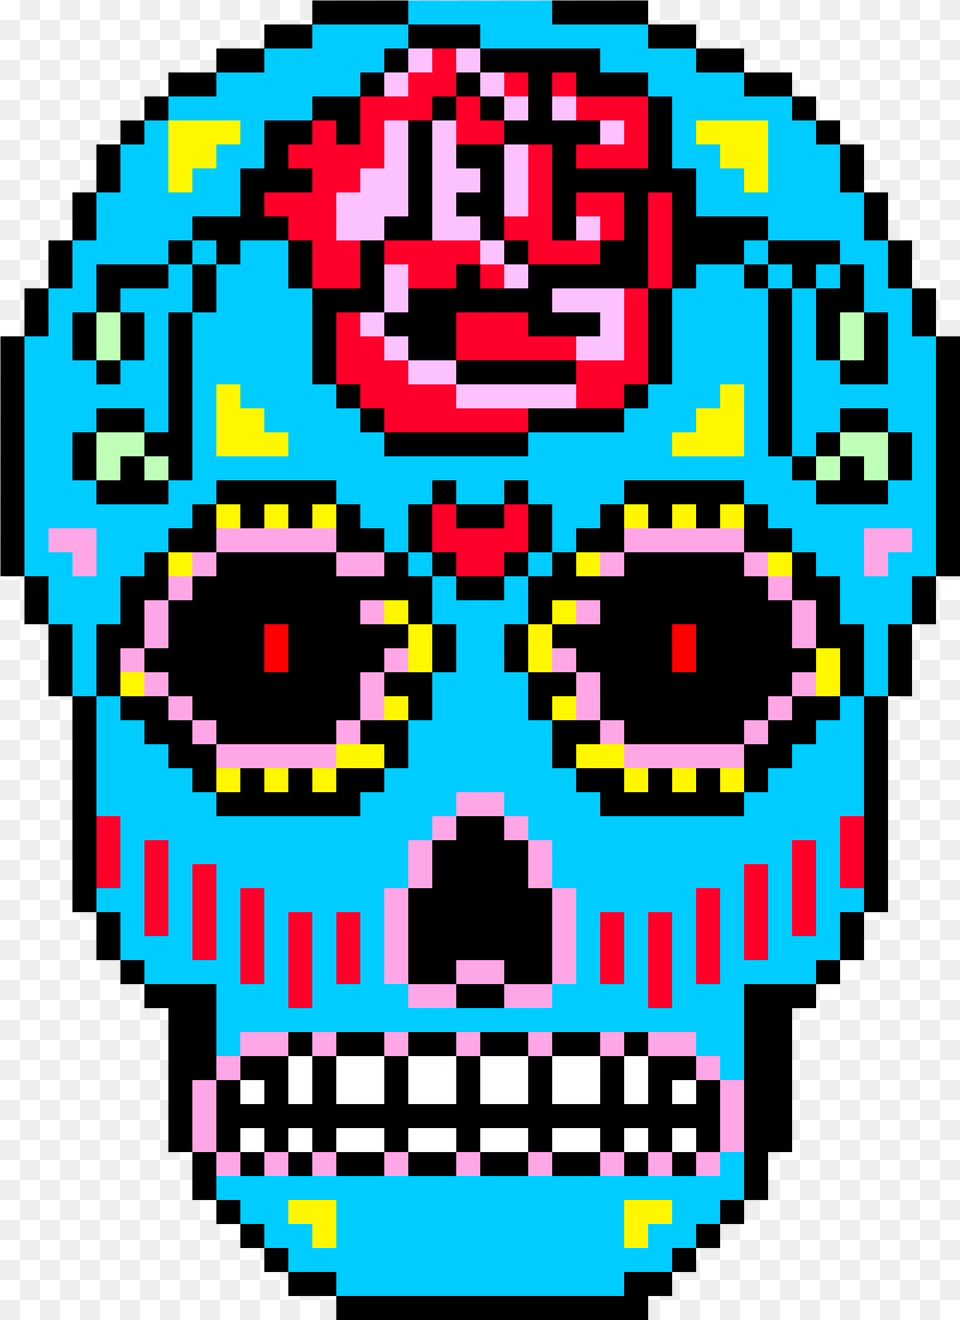 Sugar Skull Pixel Art Dessin Pixel De Tete De Mort, Pattern, Qr Code Free Png